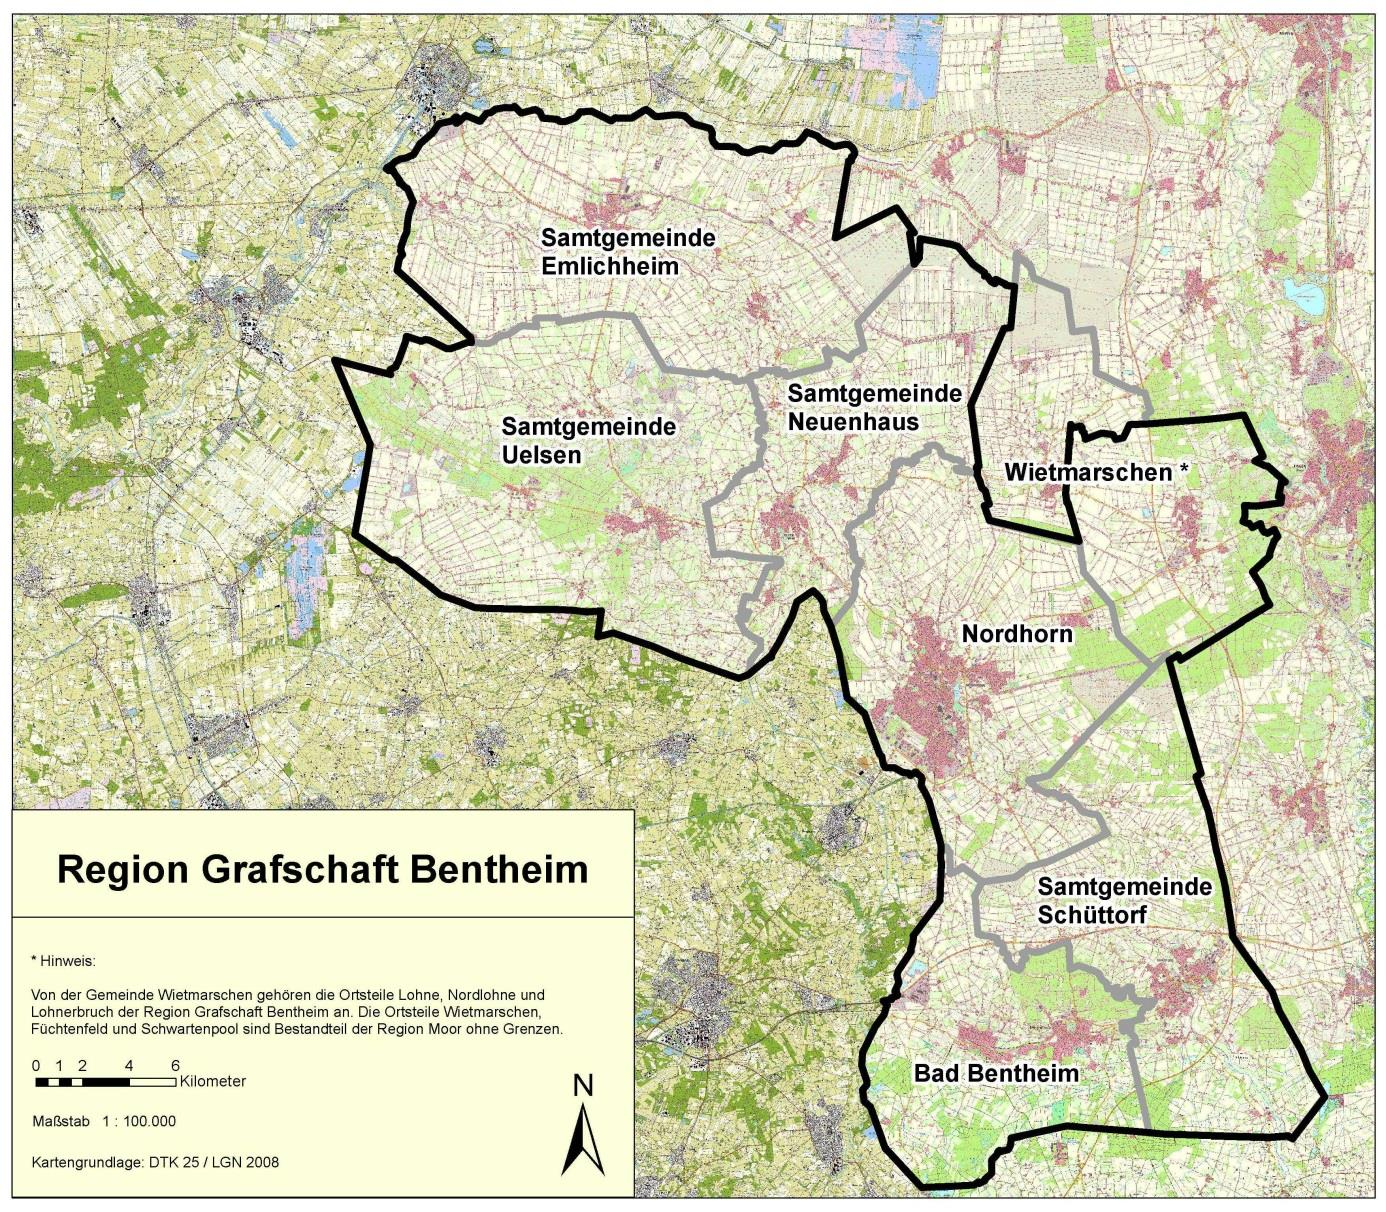 Regionsabgrenzung REK Region Grafschaft Bentheim 2 Regionsabgrenzung Die Region Grafschaft Bentheim ist weitgehend deckungsgleich mit dem gleichnamigen Landkreis und liegt im äußersten Südwesten des